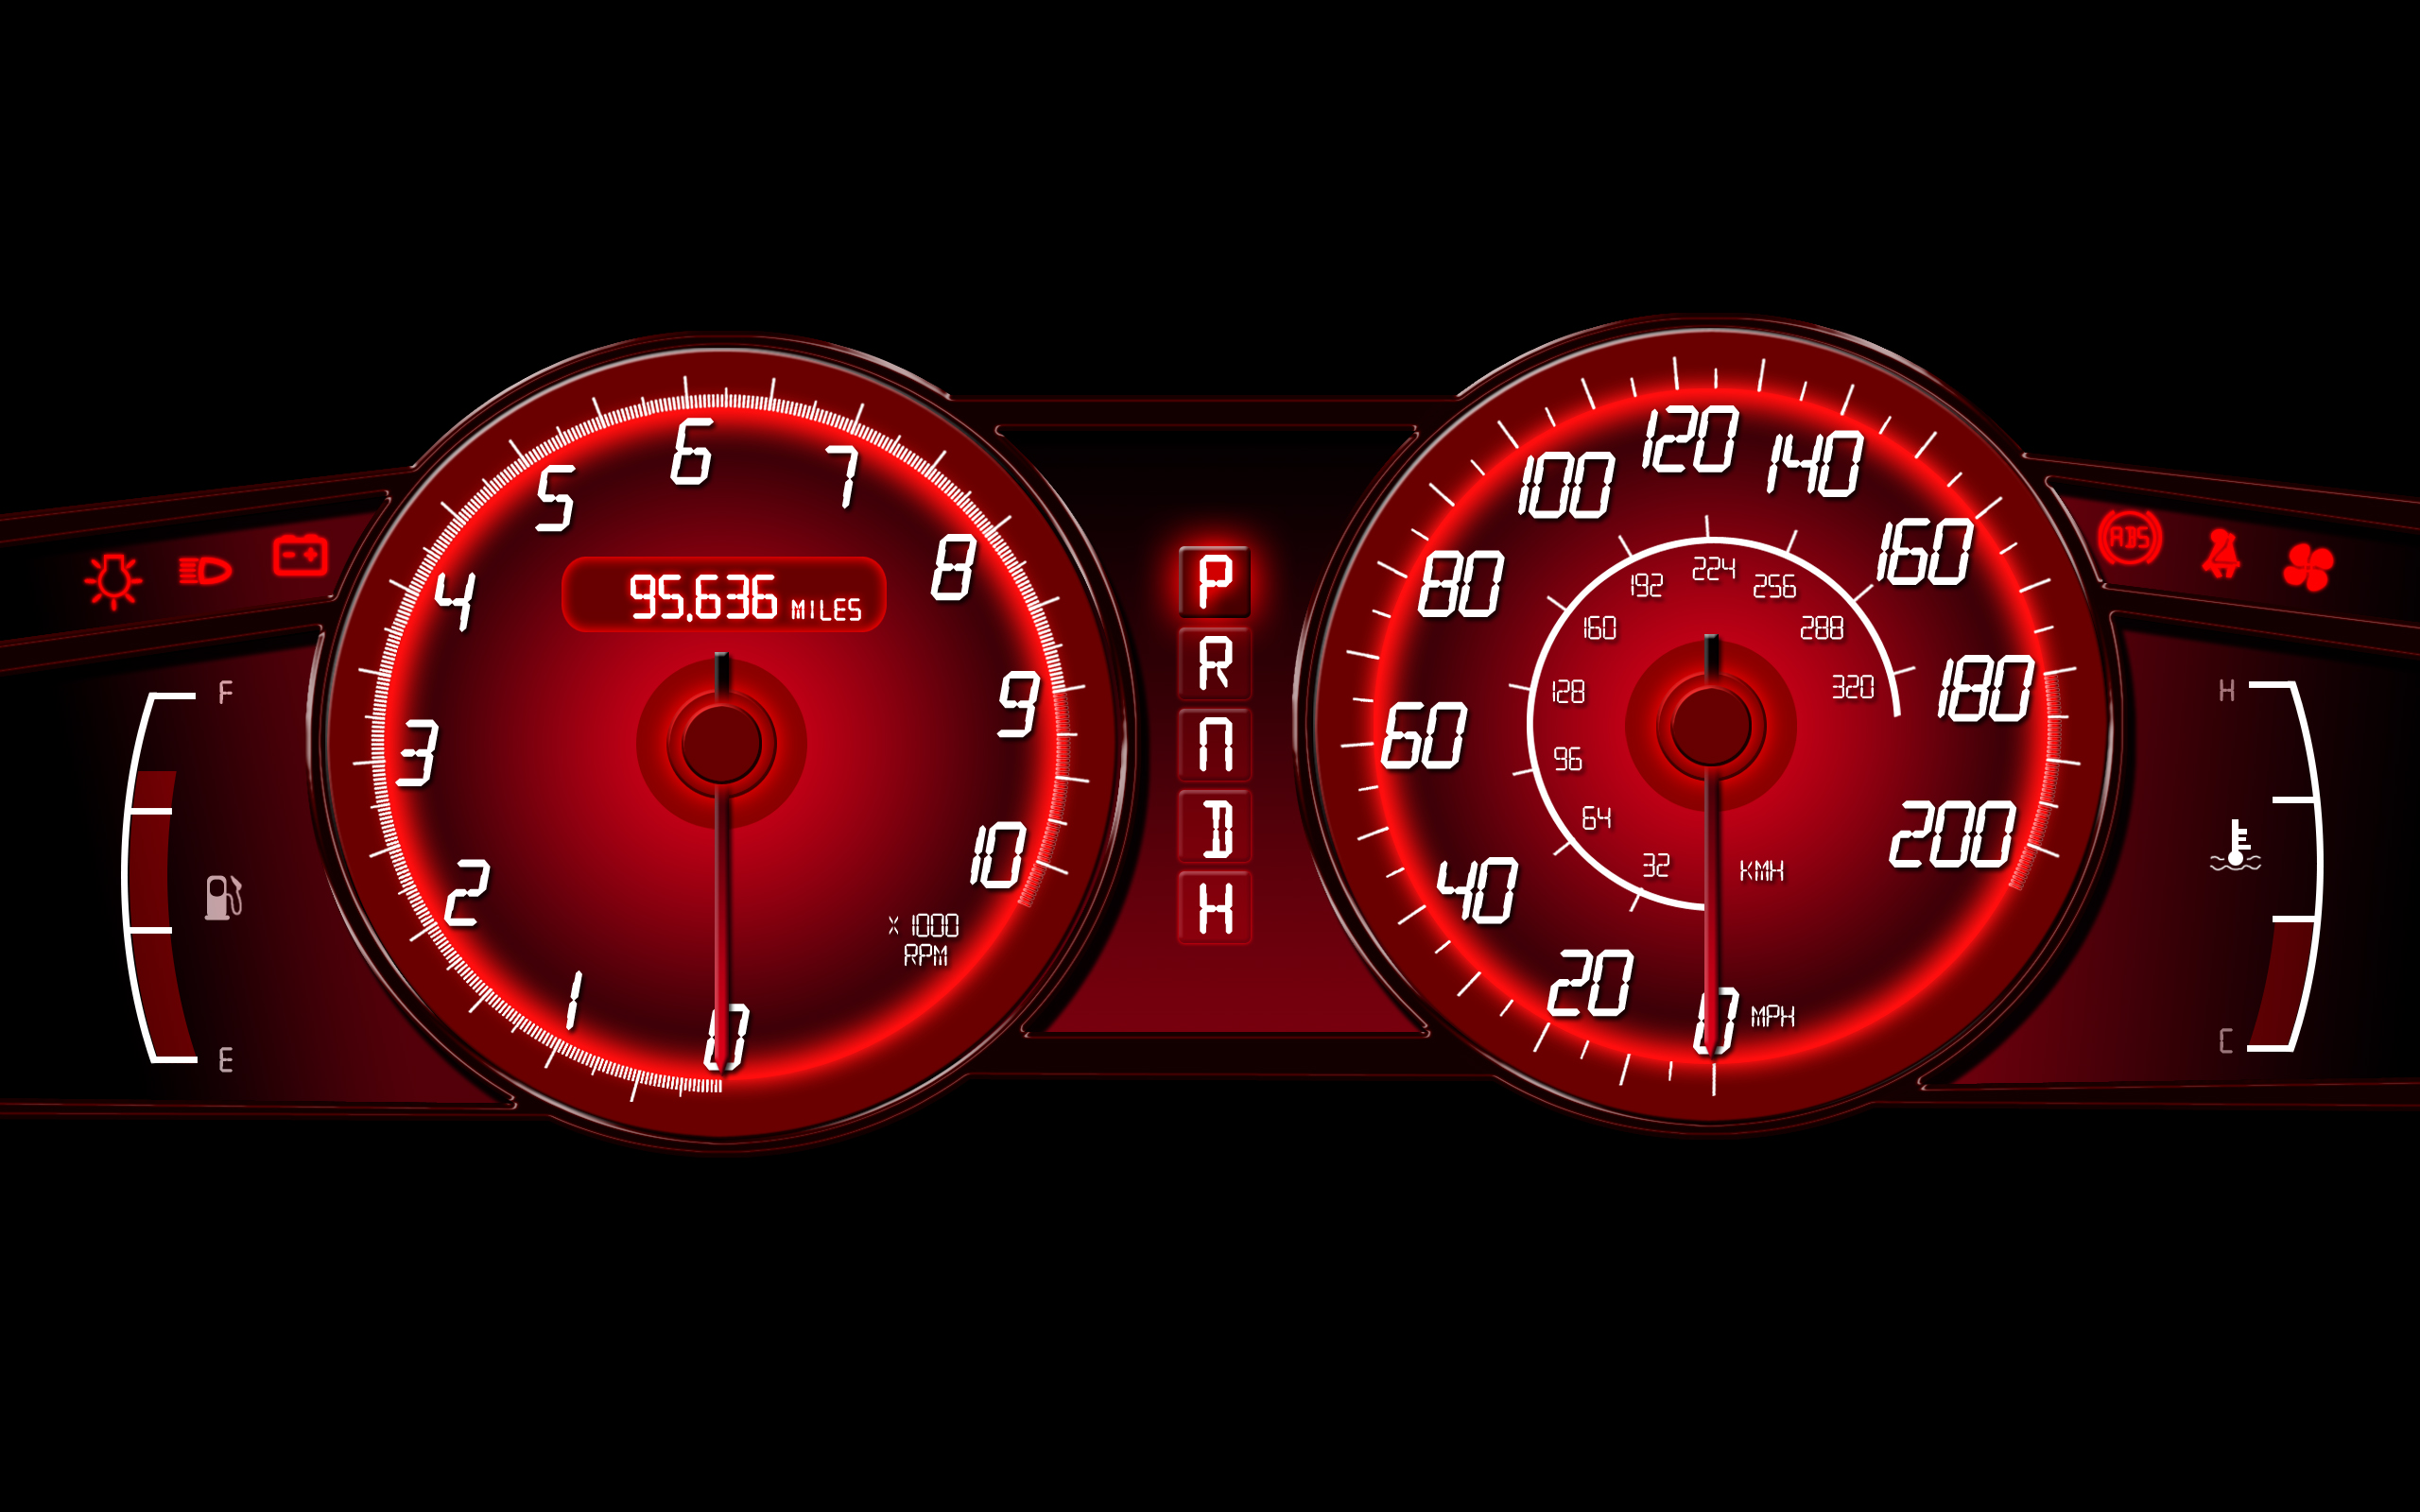 cars, dashboards, speedometer - desktop wallpaper